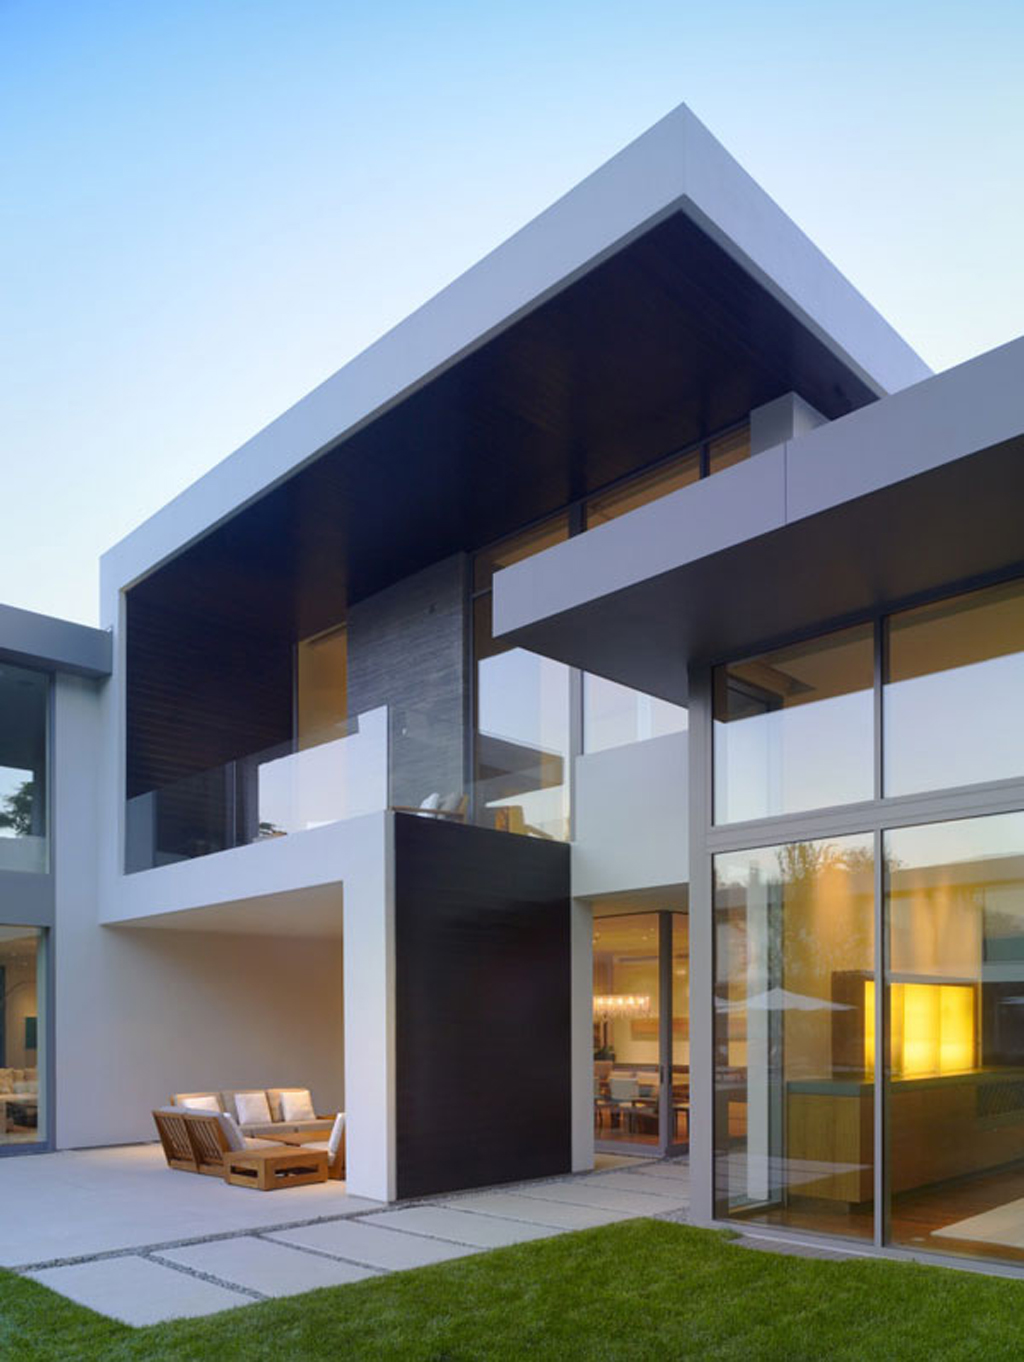 Architecture Villa Image: Architecture Design For Home